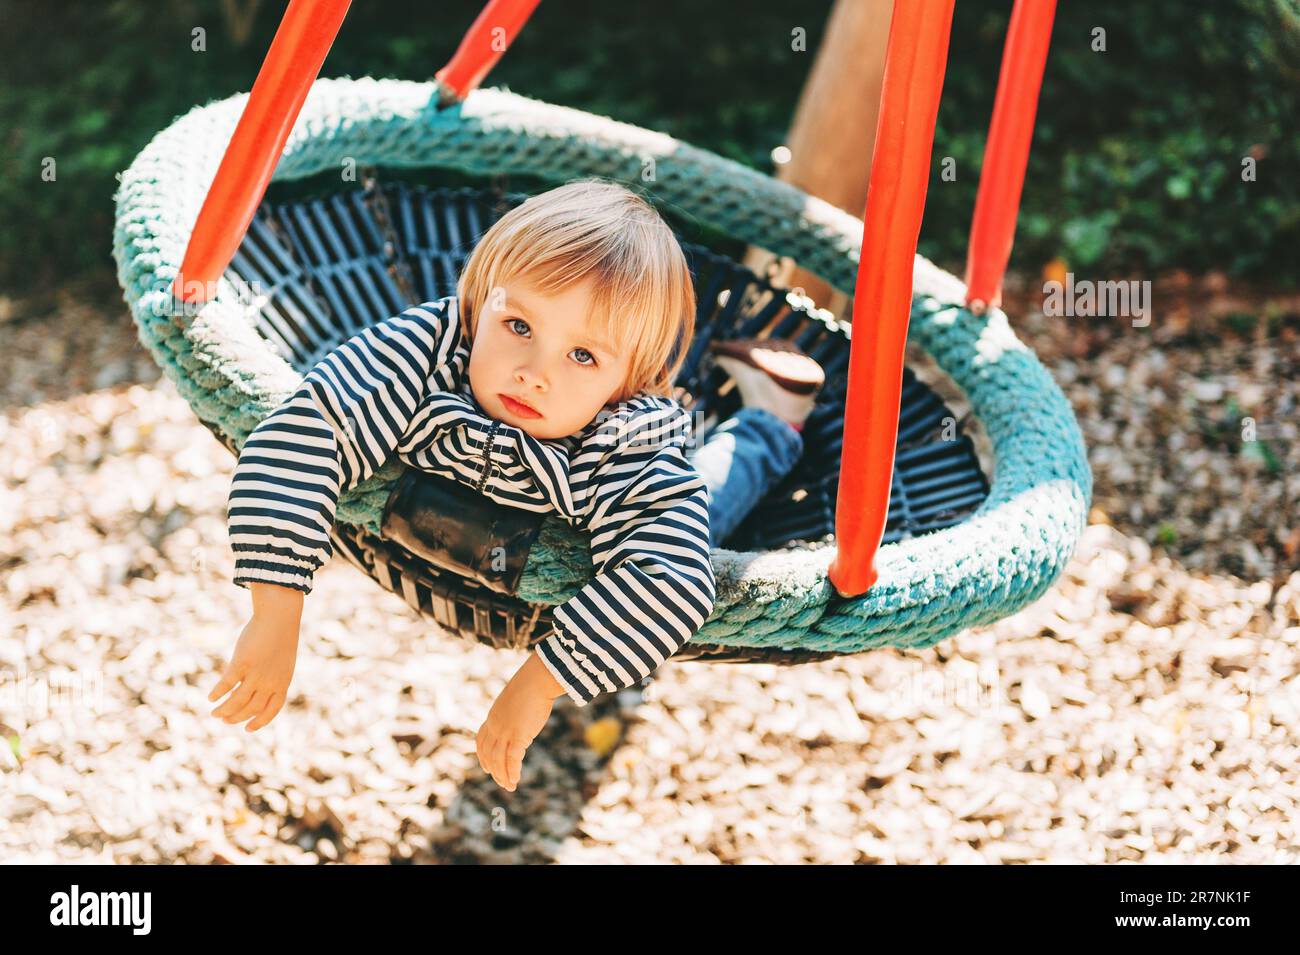 Bambina che si diverte nel parco, bambino di 2-3 anni che gioca nella grande altalena, parco giochi, attività per bambini Foto Stock